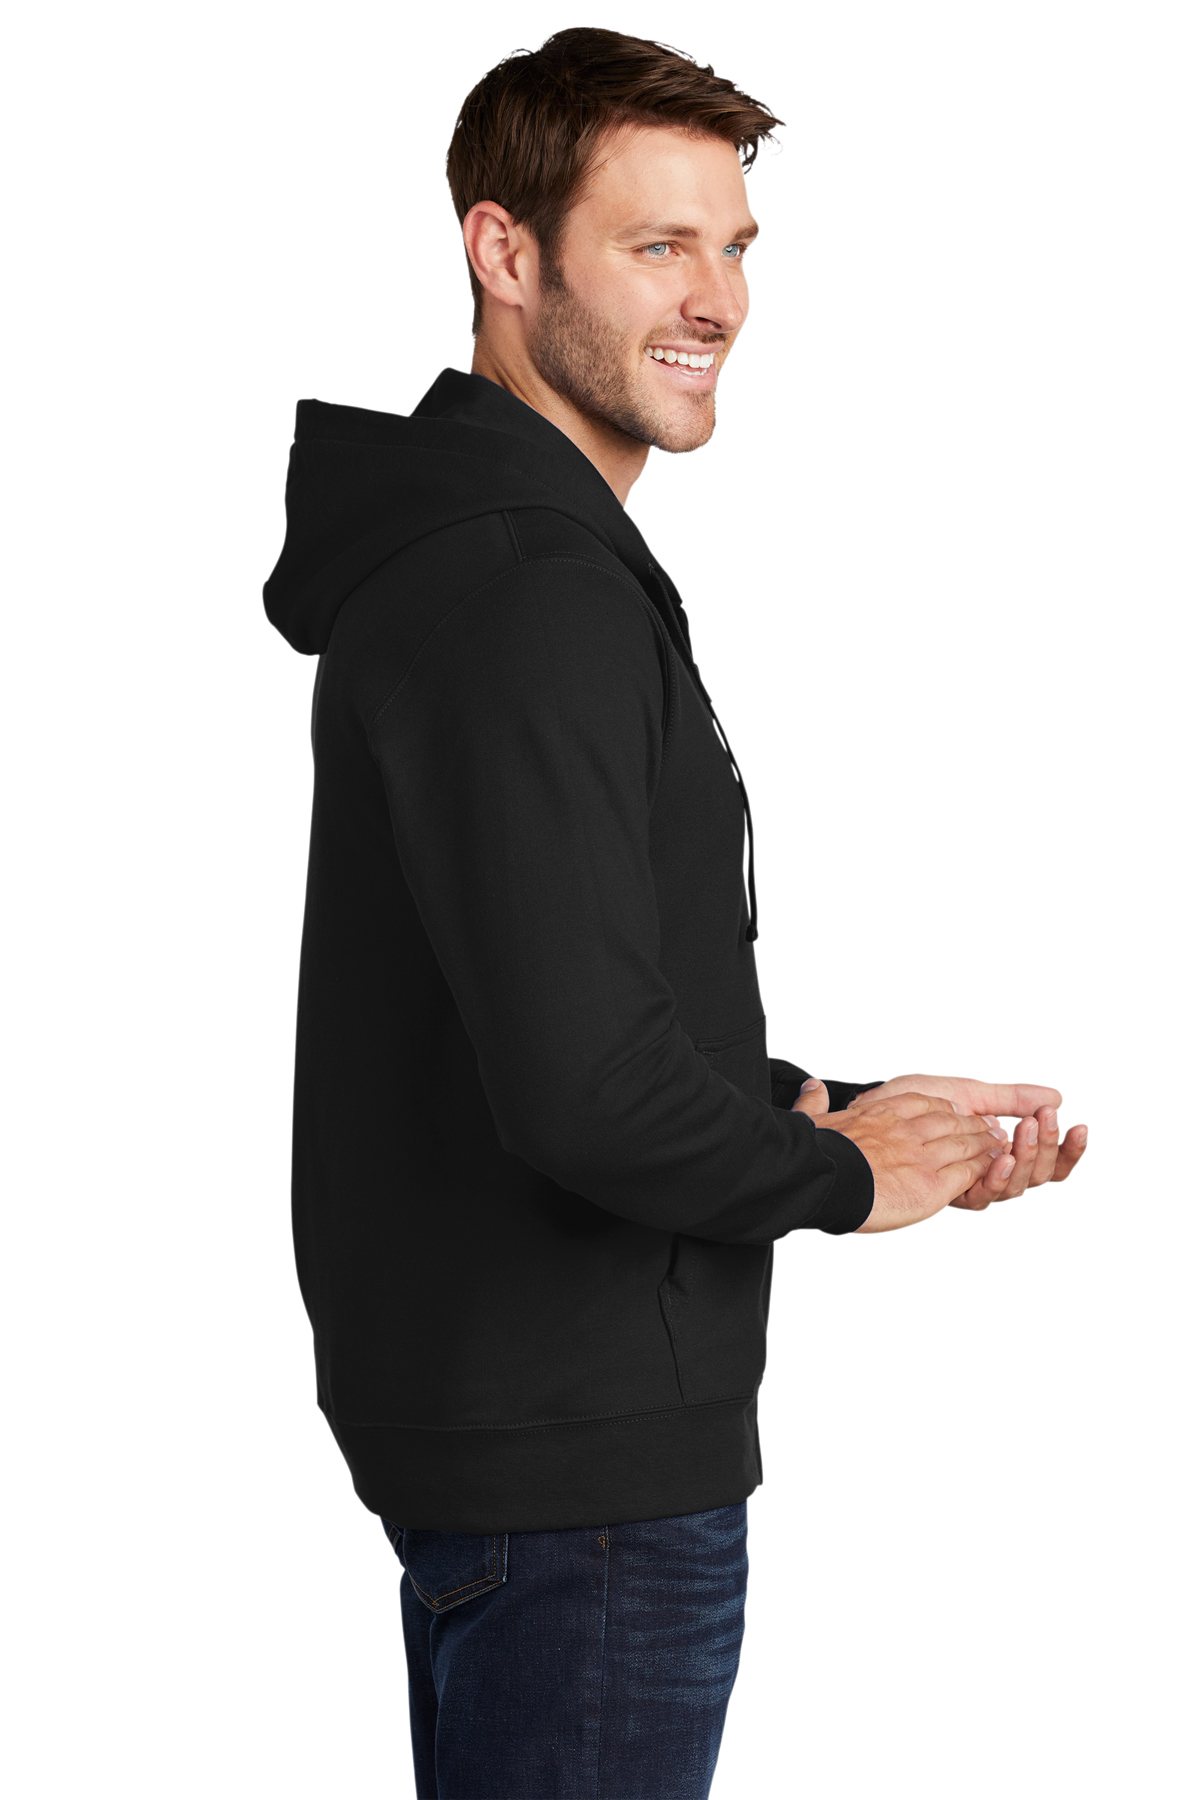 Port & Company ® Fan Favorite™ Fleece Full-Zip Hooded Sweatshirt ...